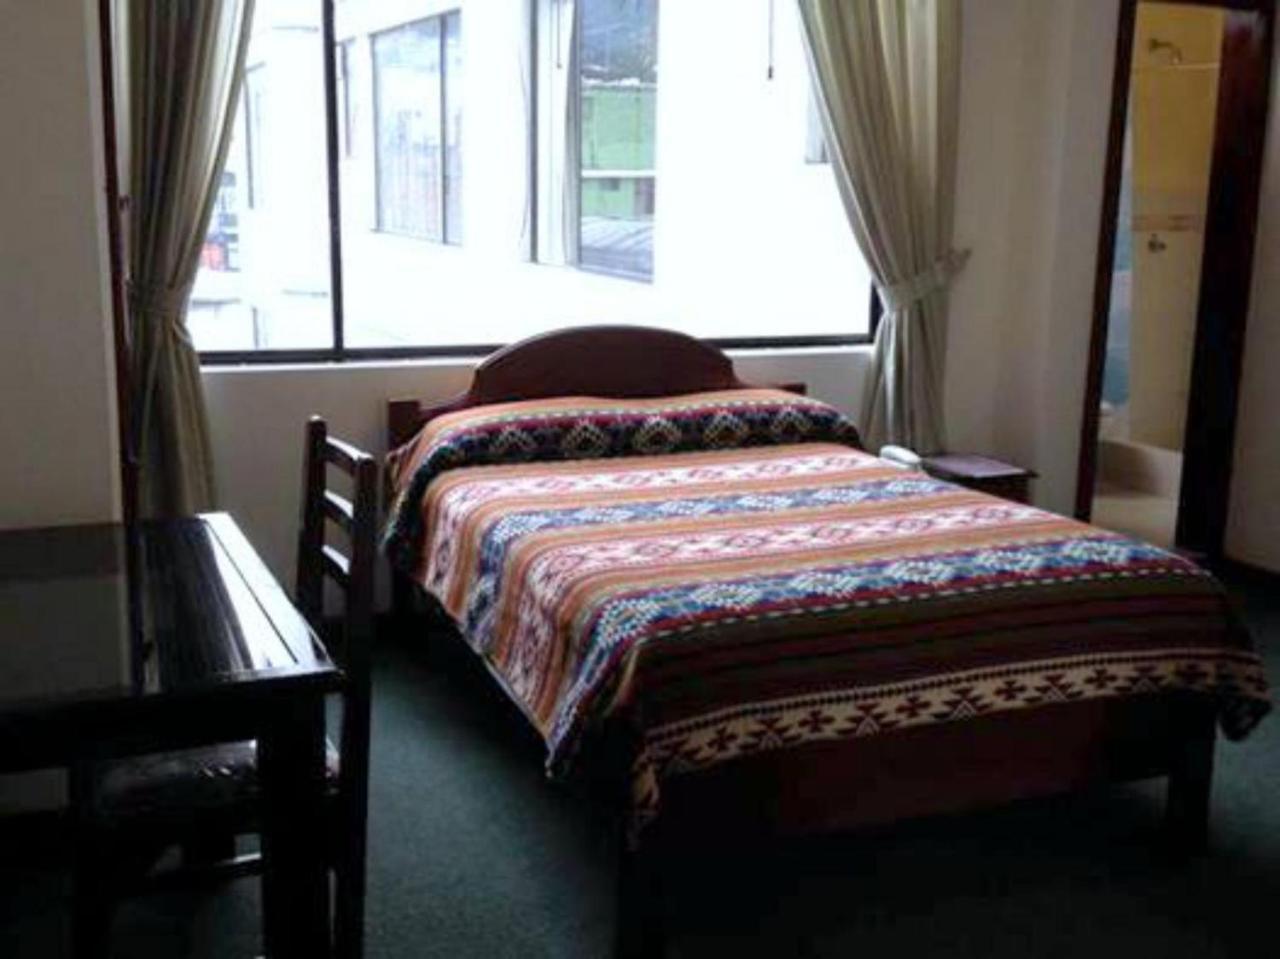 Hotel Coraza Otavalo Esterno foto